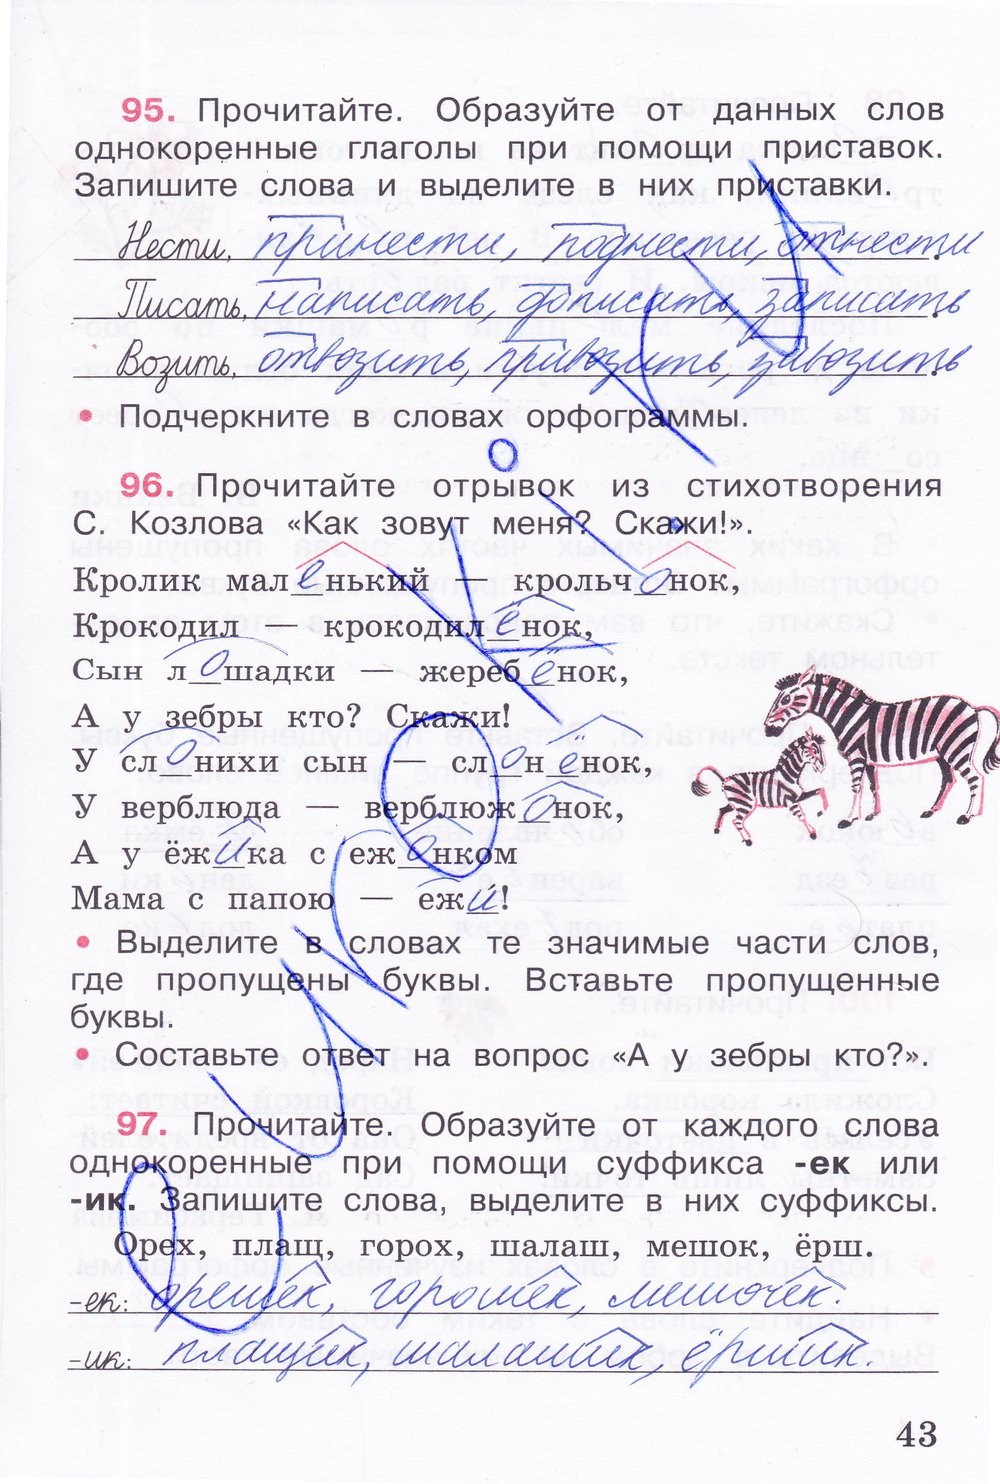 Русский язык 1 класс страница 42 ответы